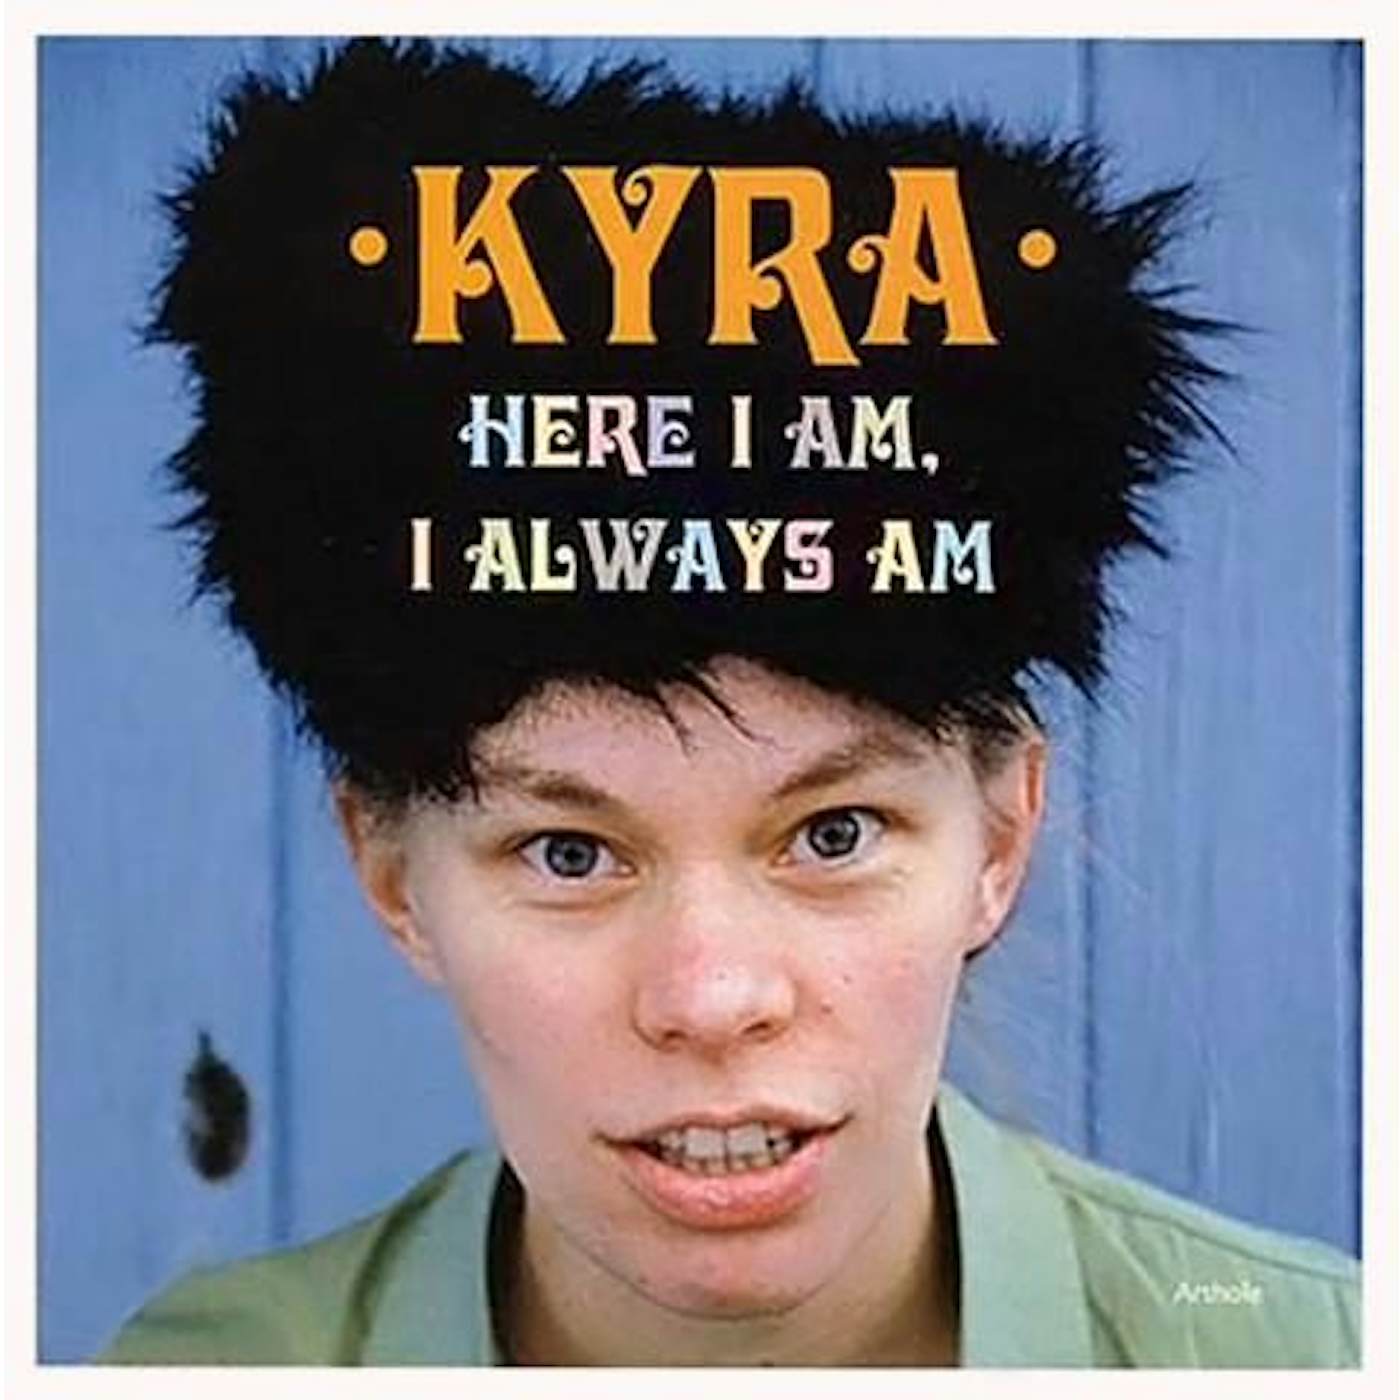 Kyra HERE I AM, I ALWAYS AM Vinyl Record